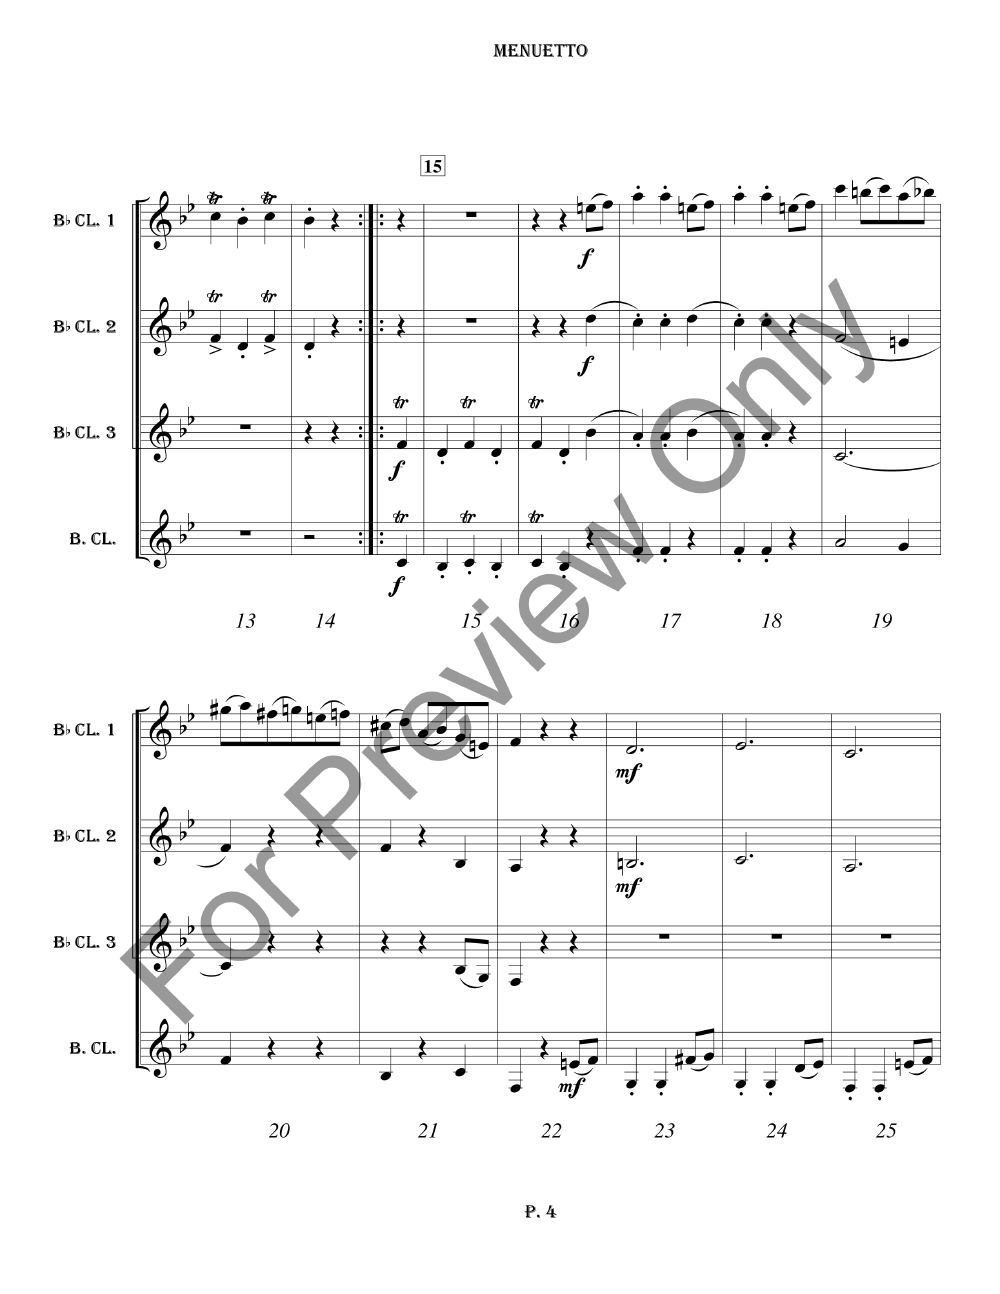 Menuetto, Op. 64, #3 Clarinet Quartet